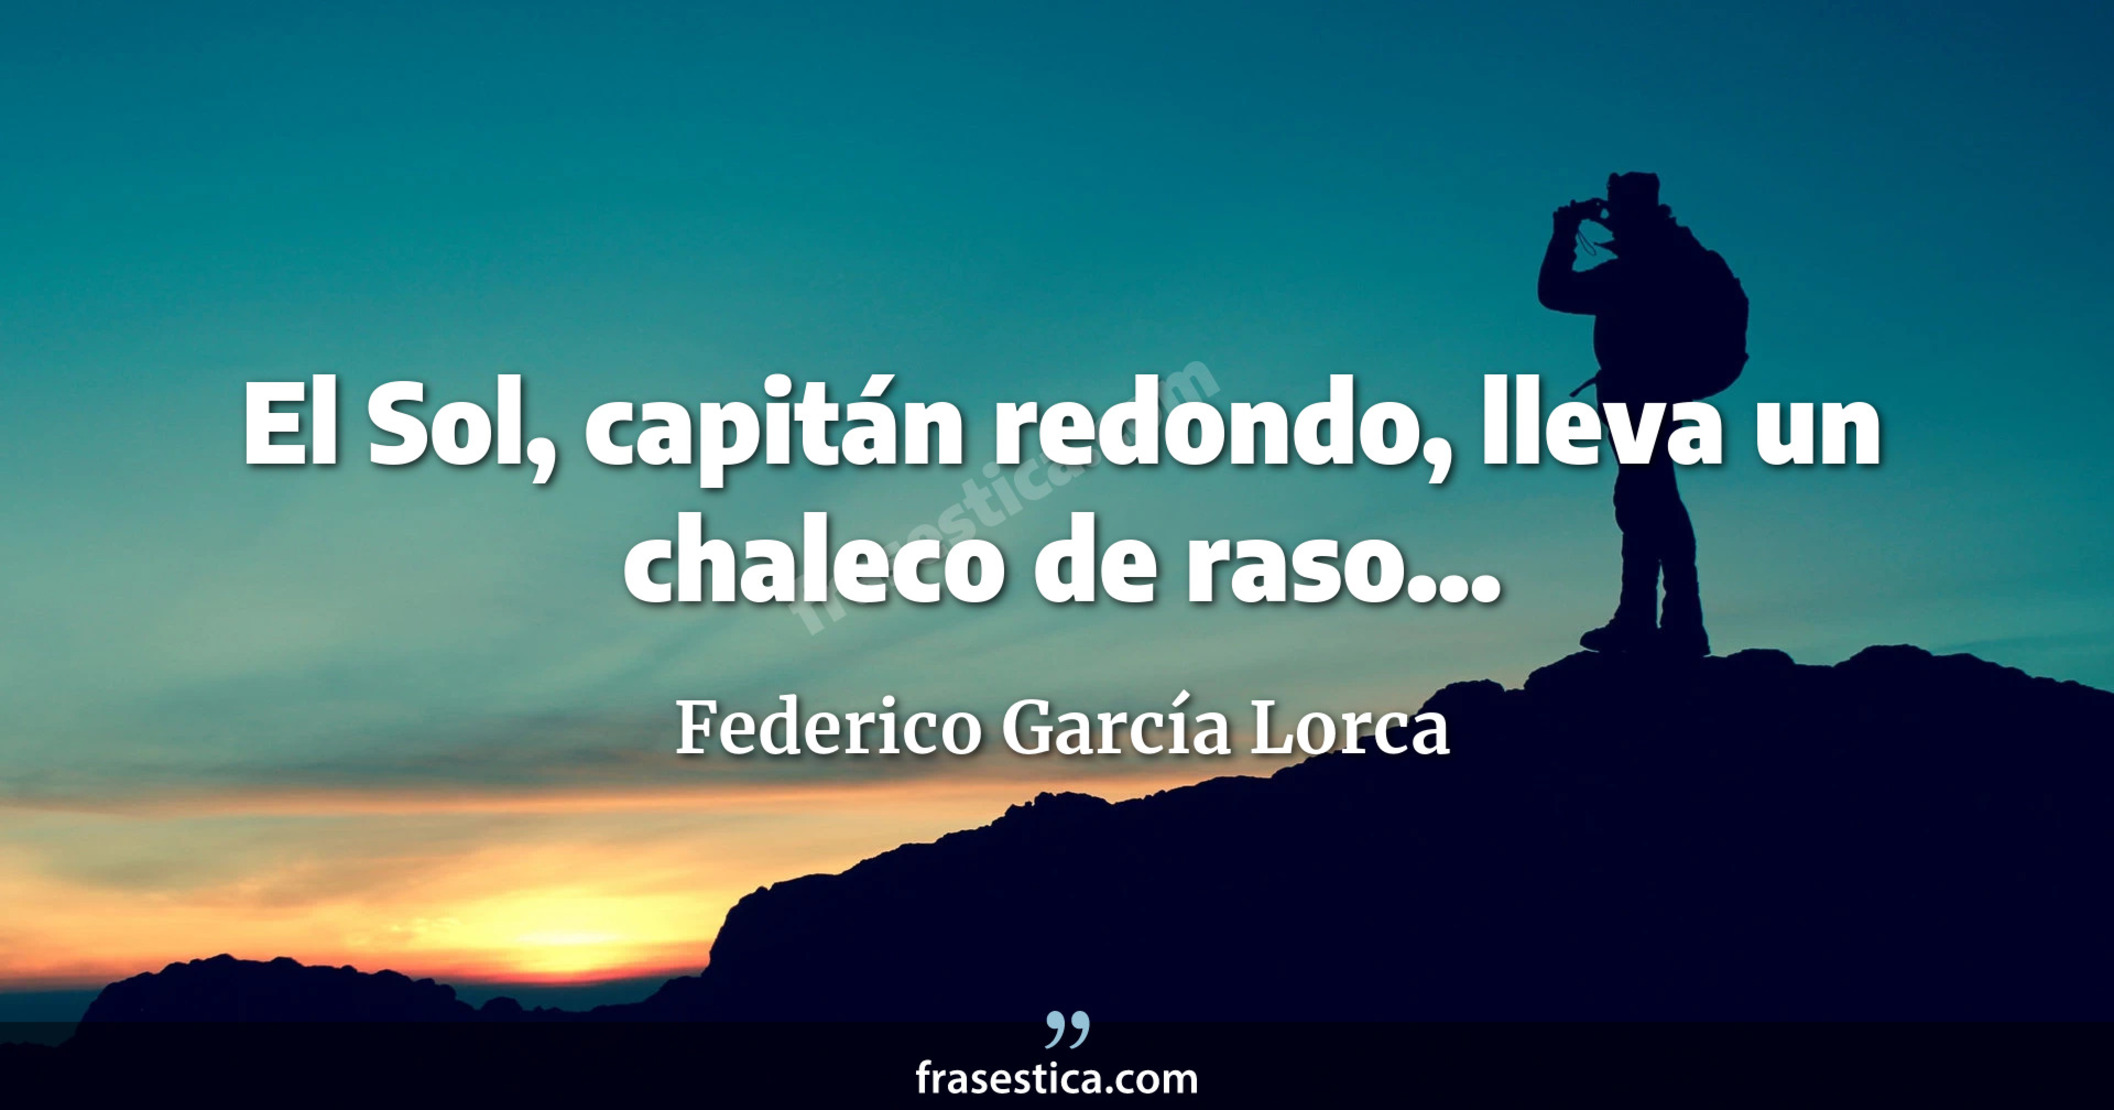 El Sol, capitán redondo, lleva un chaleco de raso... - Federico García Lorca